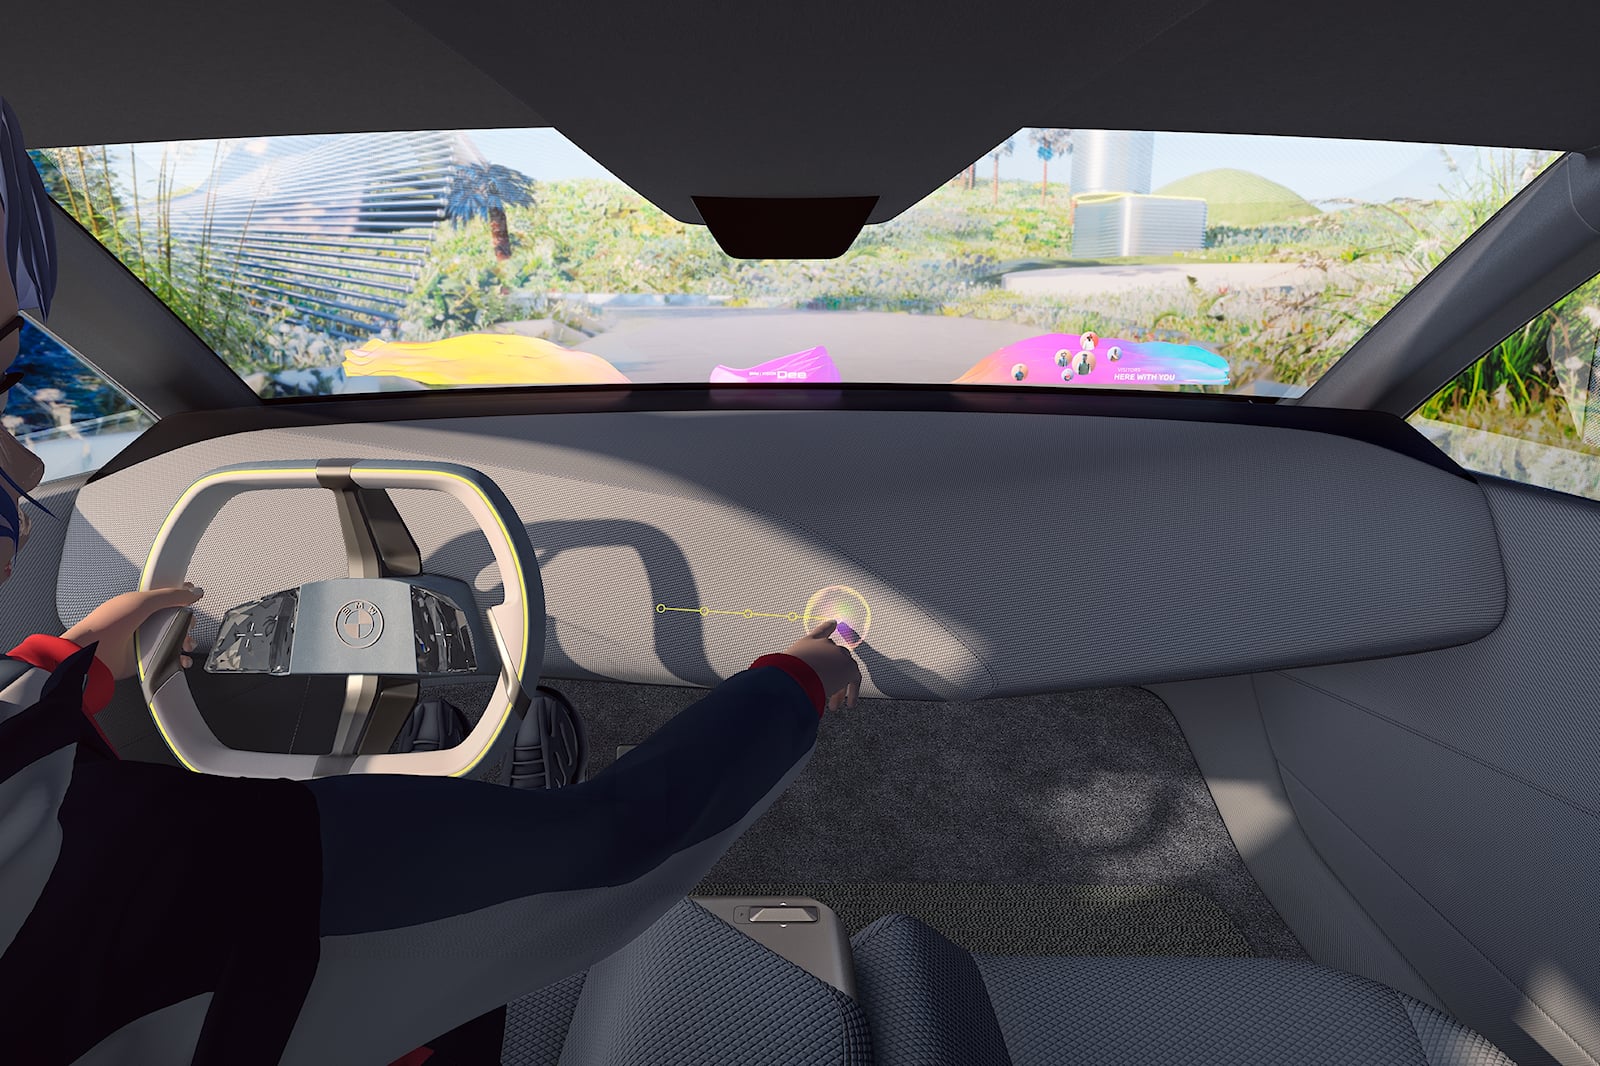 Дисплей BMW Panoramic Vision в ветровом стекле появится на новых серийных моделях концерна уже в 2025 году